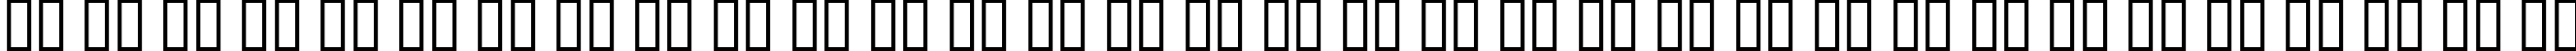 Пример написания русского алфавита шрифтом Dumbledor 3 Thin